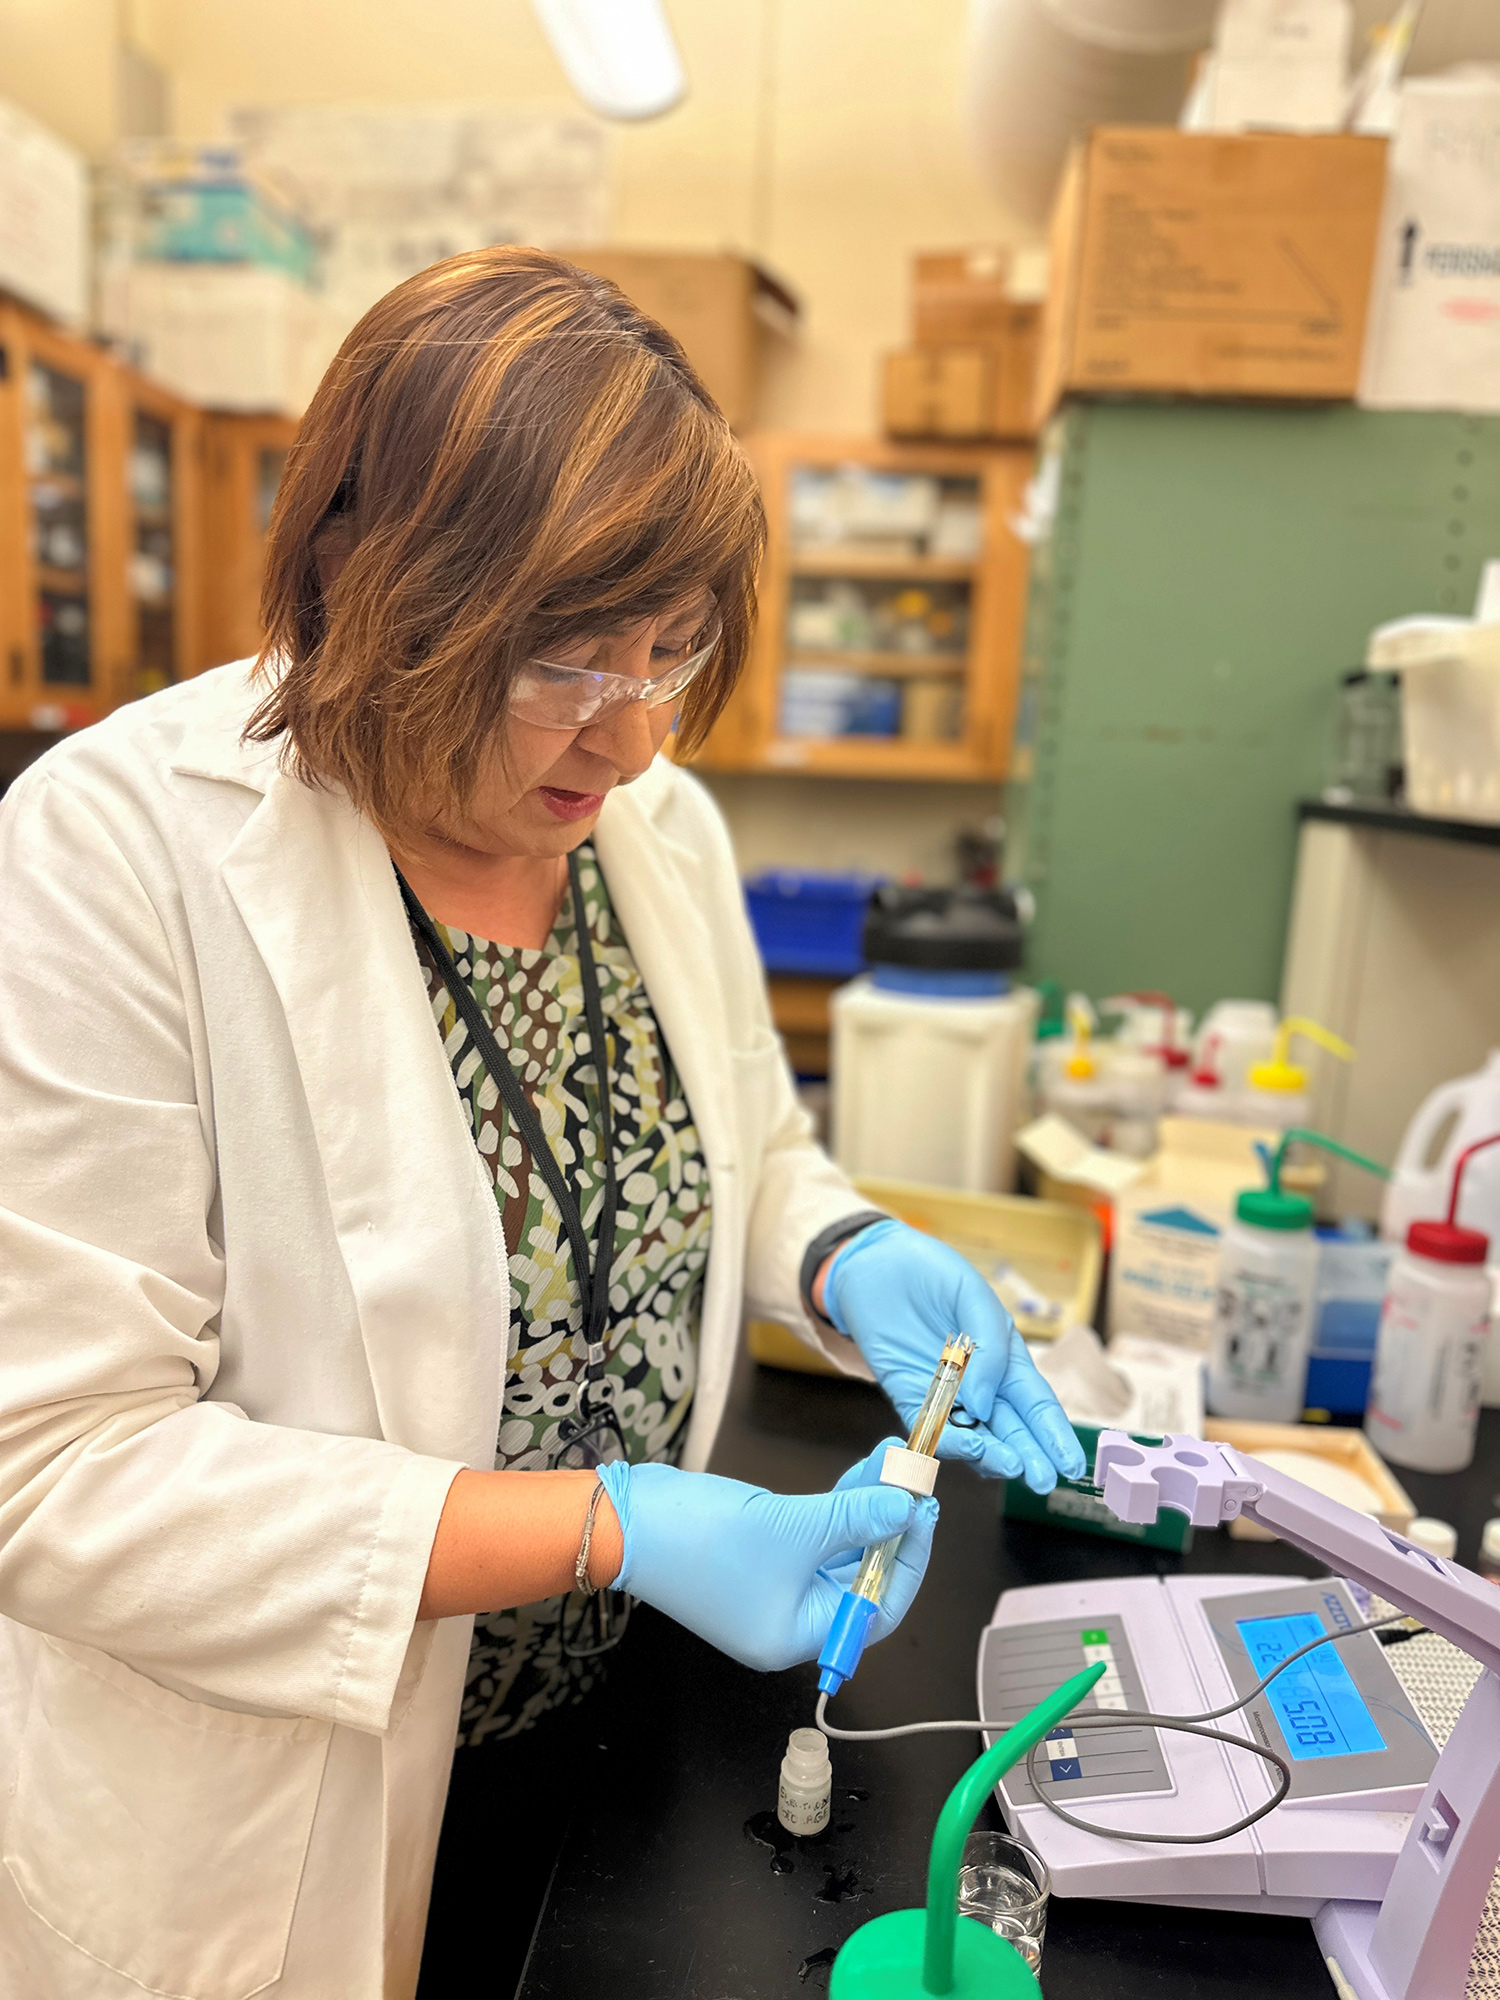 Una profesora universitaria con una bata de laboratorio blanca y guantes prueba los niveles de PH del agua utilizando equipo científico.